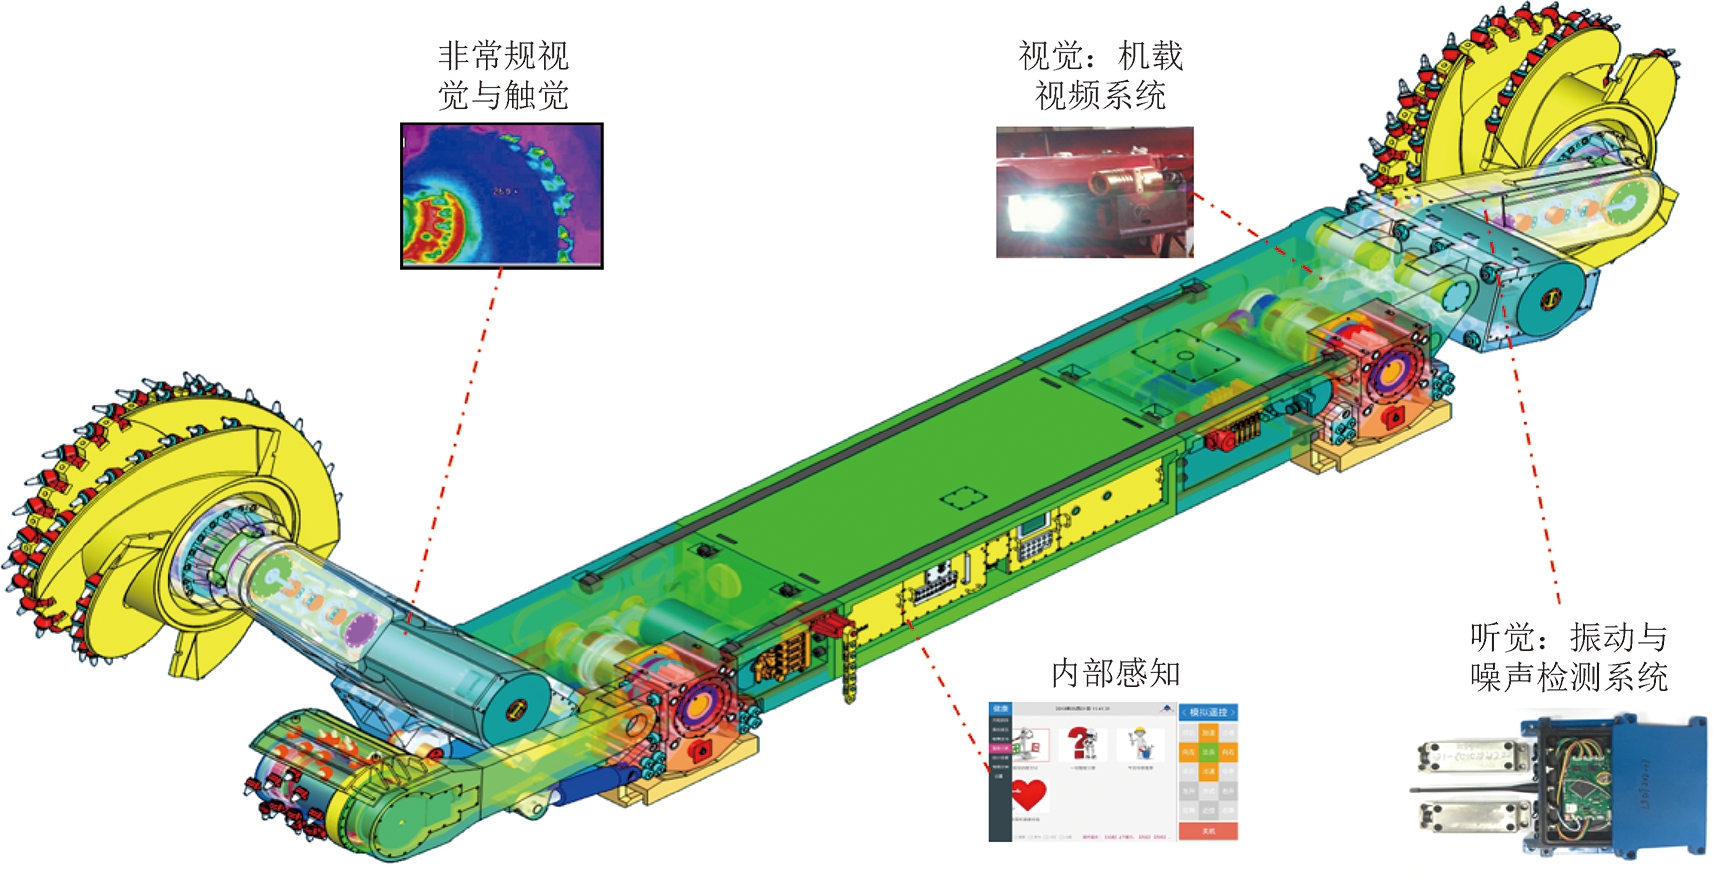 上海分公司采煤机智能化技术现状与展望